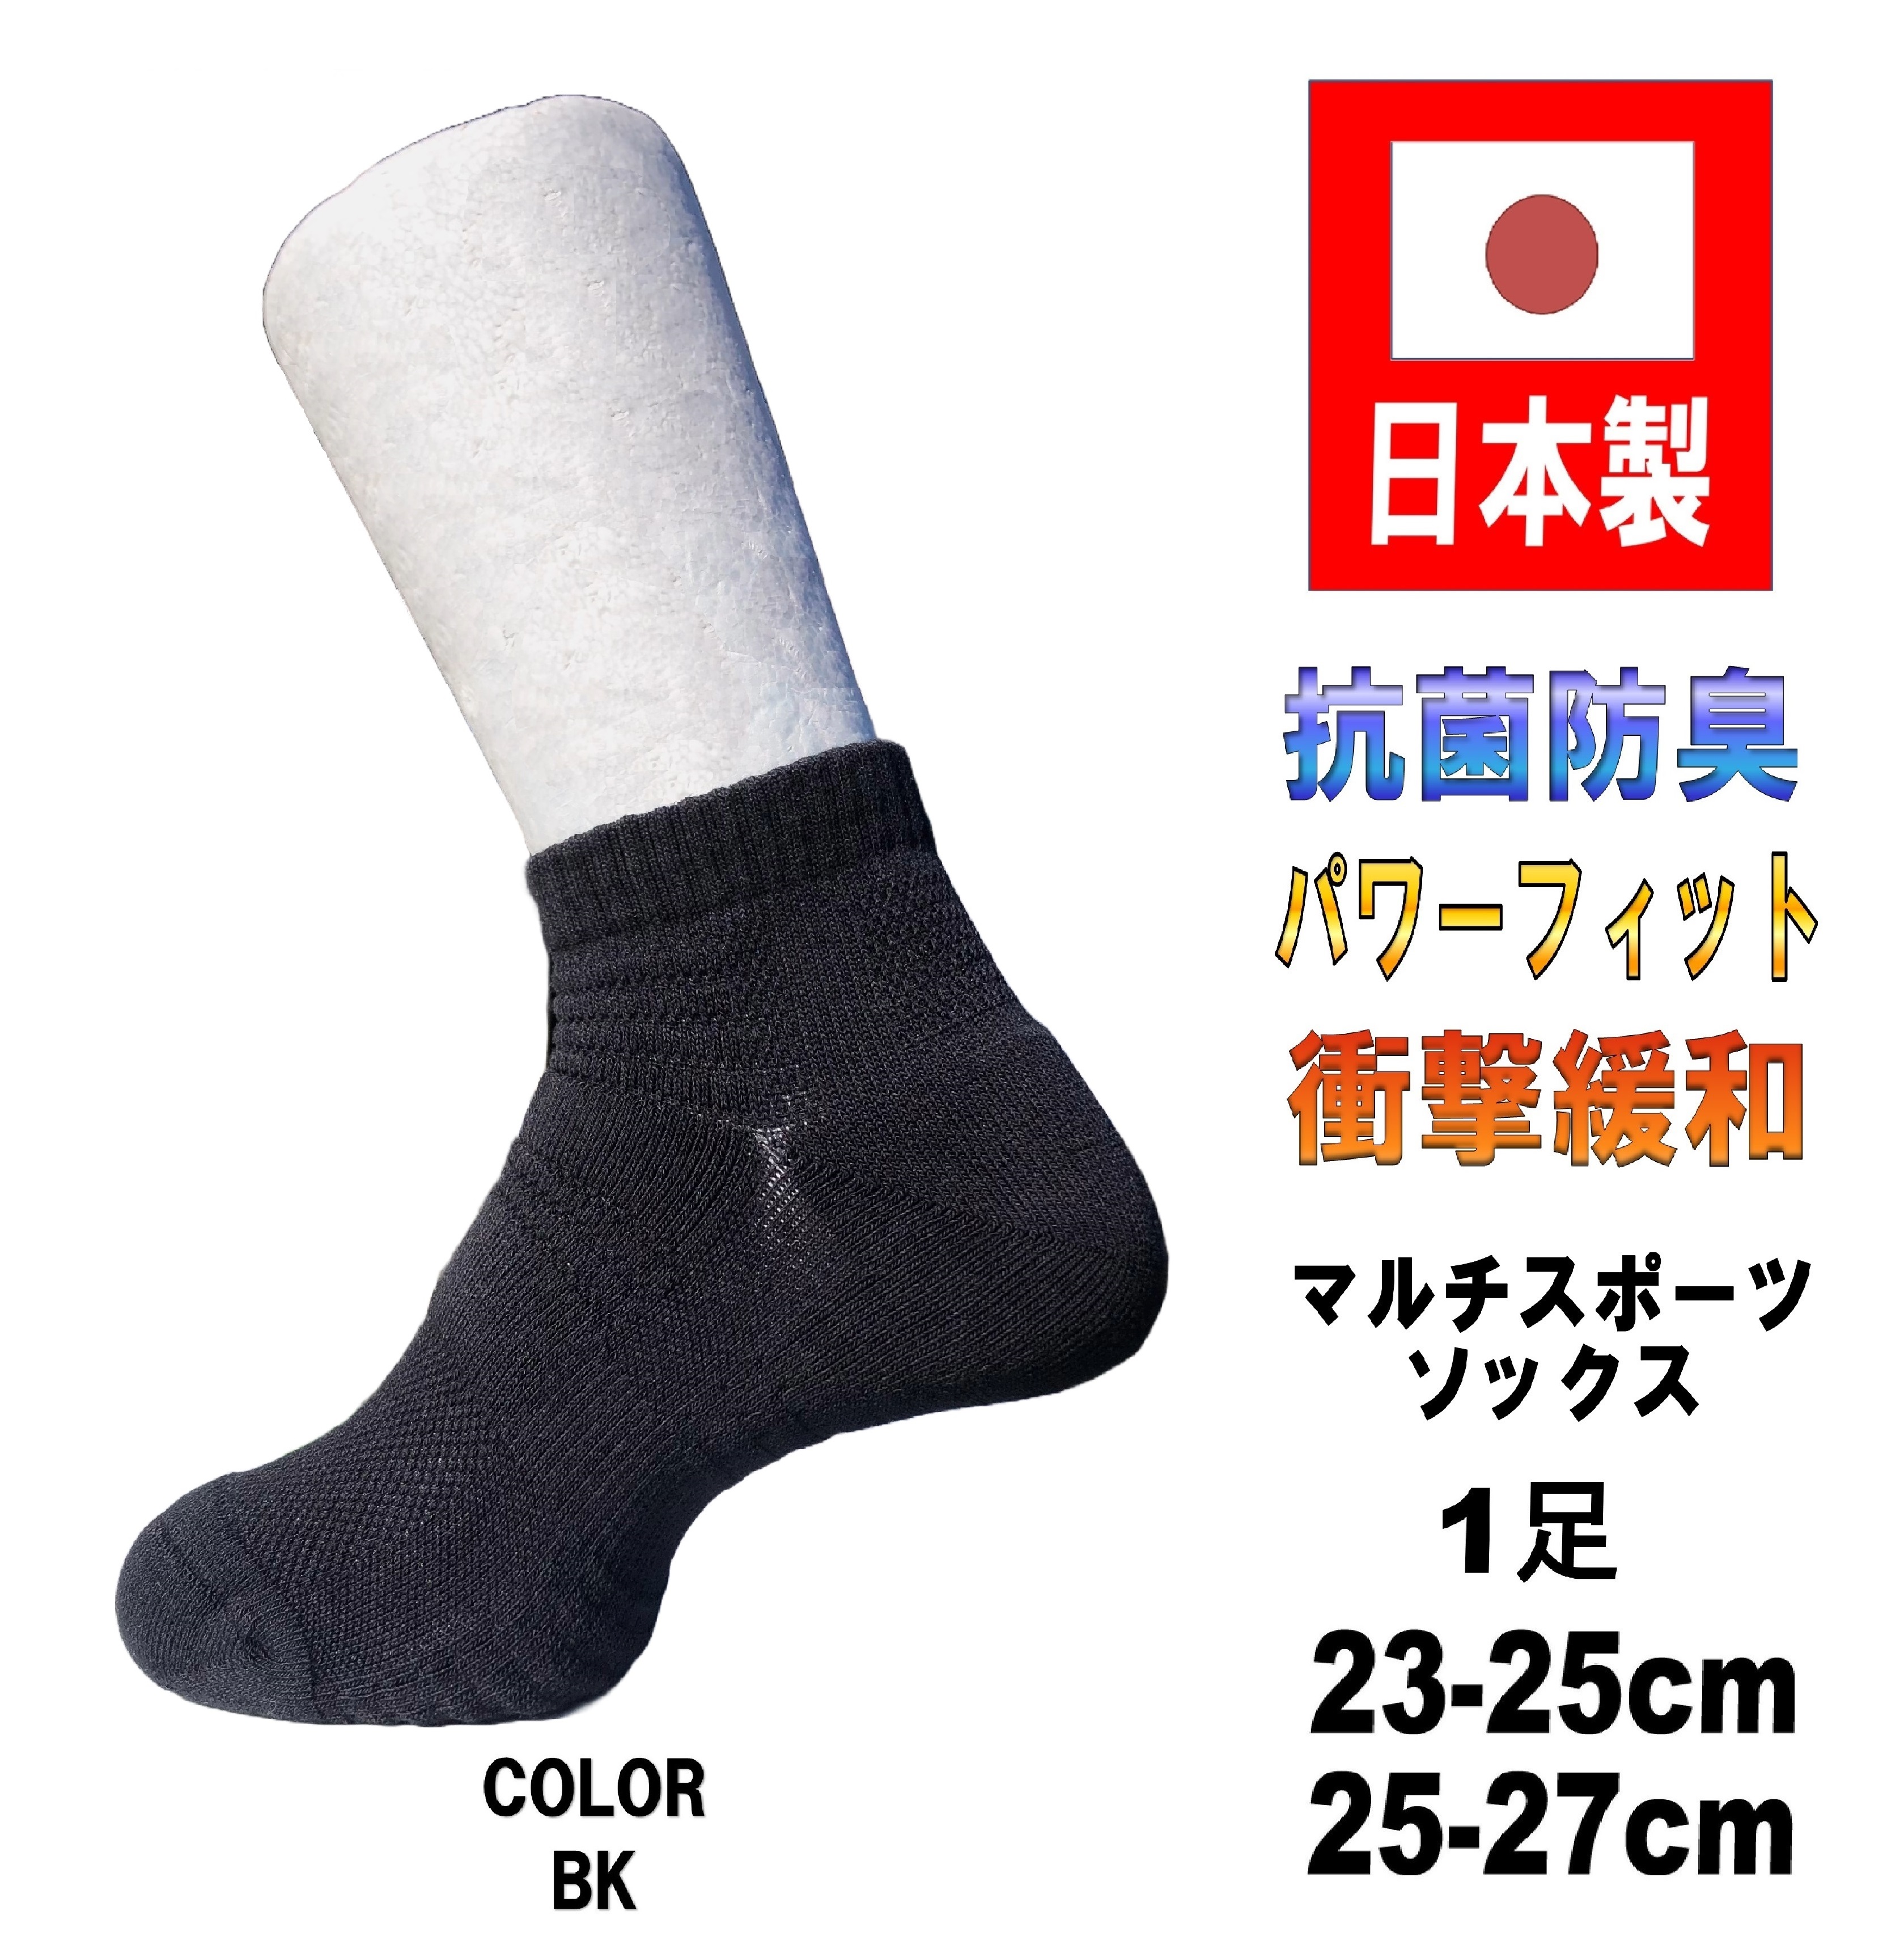 日本製 マルチスポーツソックス バスケットボール 1足 2サイズ 2カラー